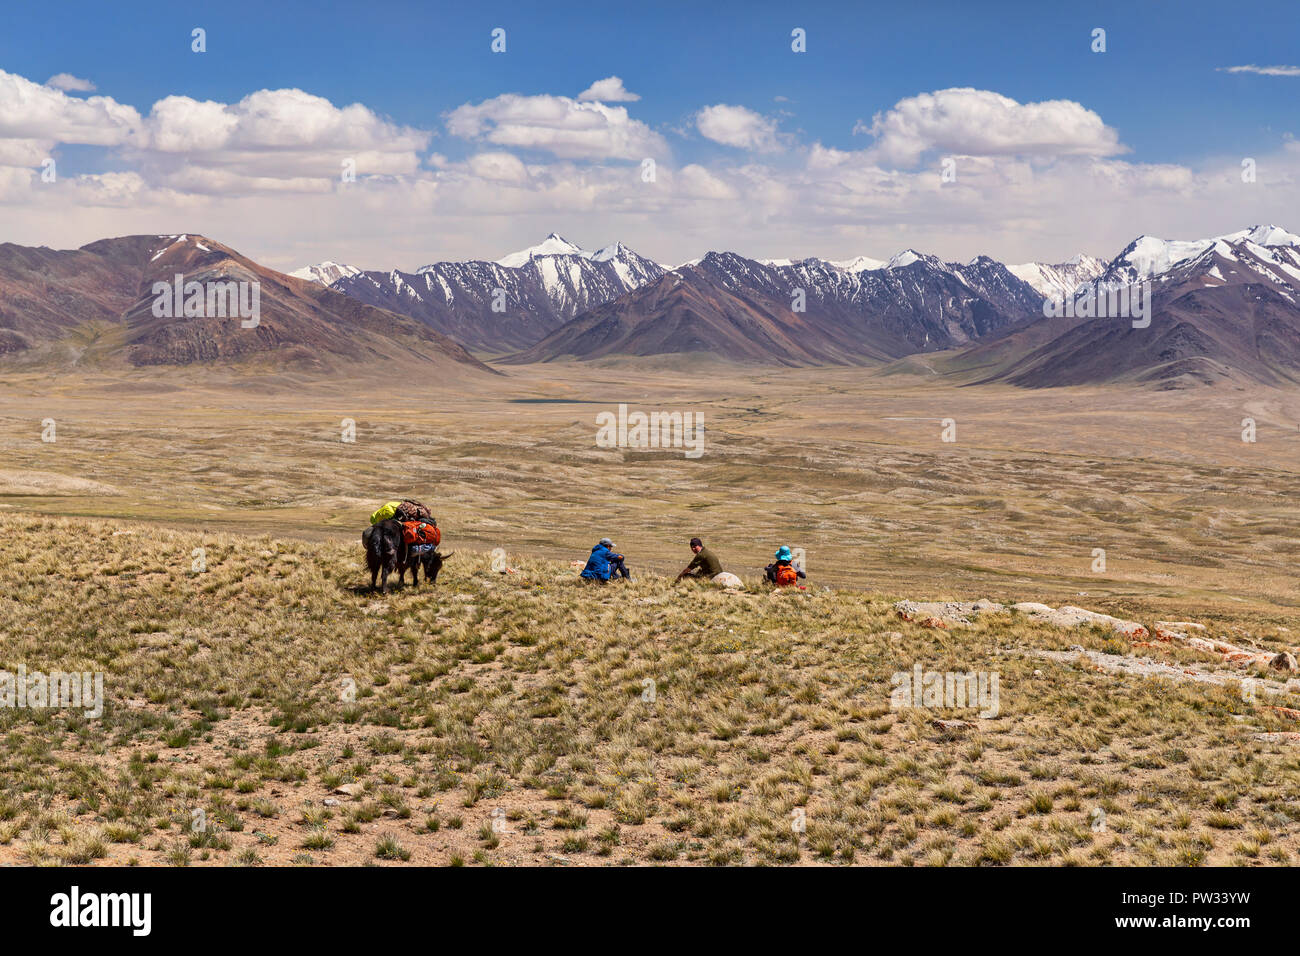 Kirgisischen Hirten mit Yak verpackt für die Expedition von Keng Shiber Kara Jilga, Pamir, Gorno-Badakhshan, Tadschikistan. Stockfoto